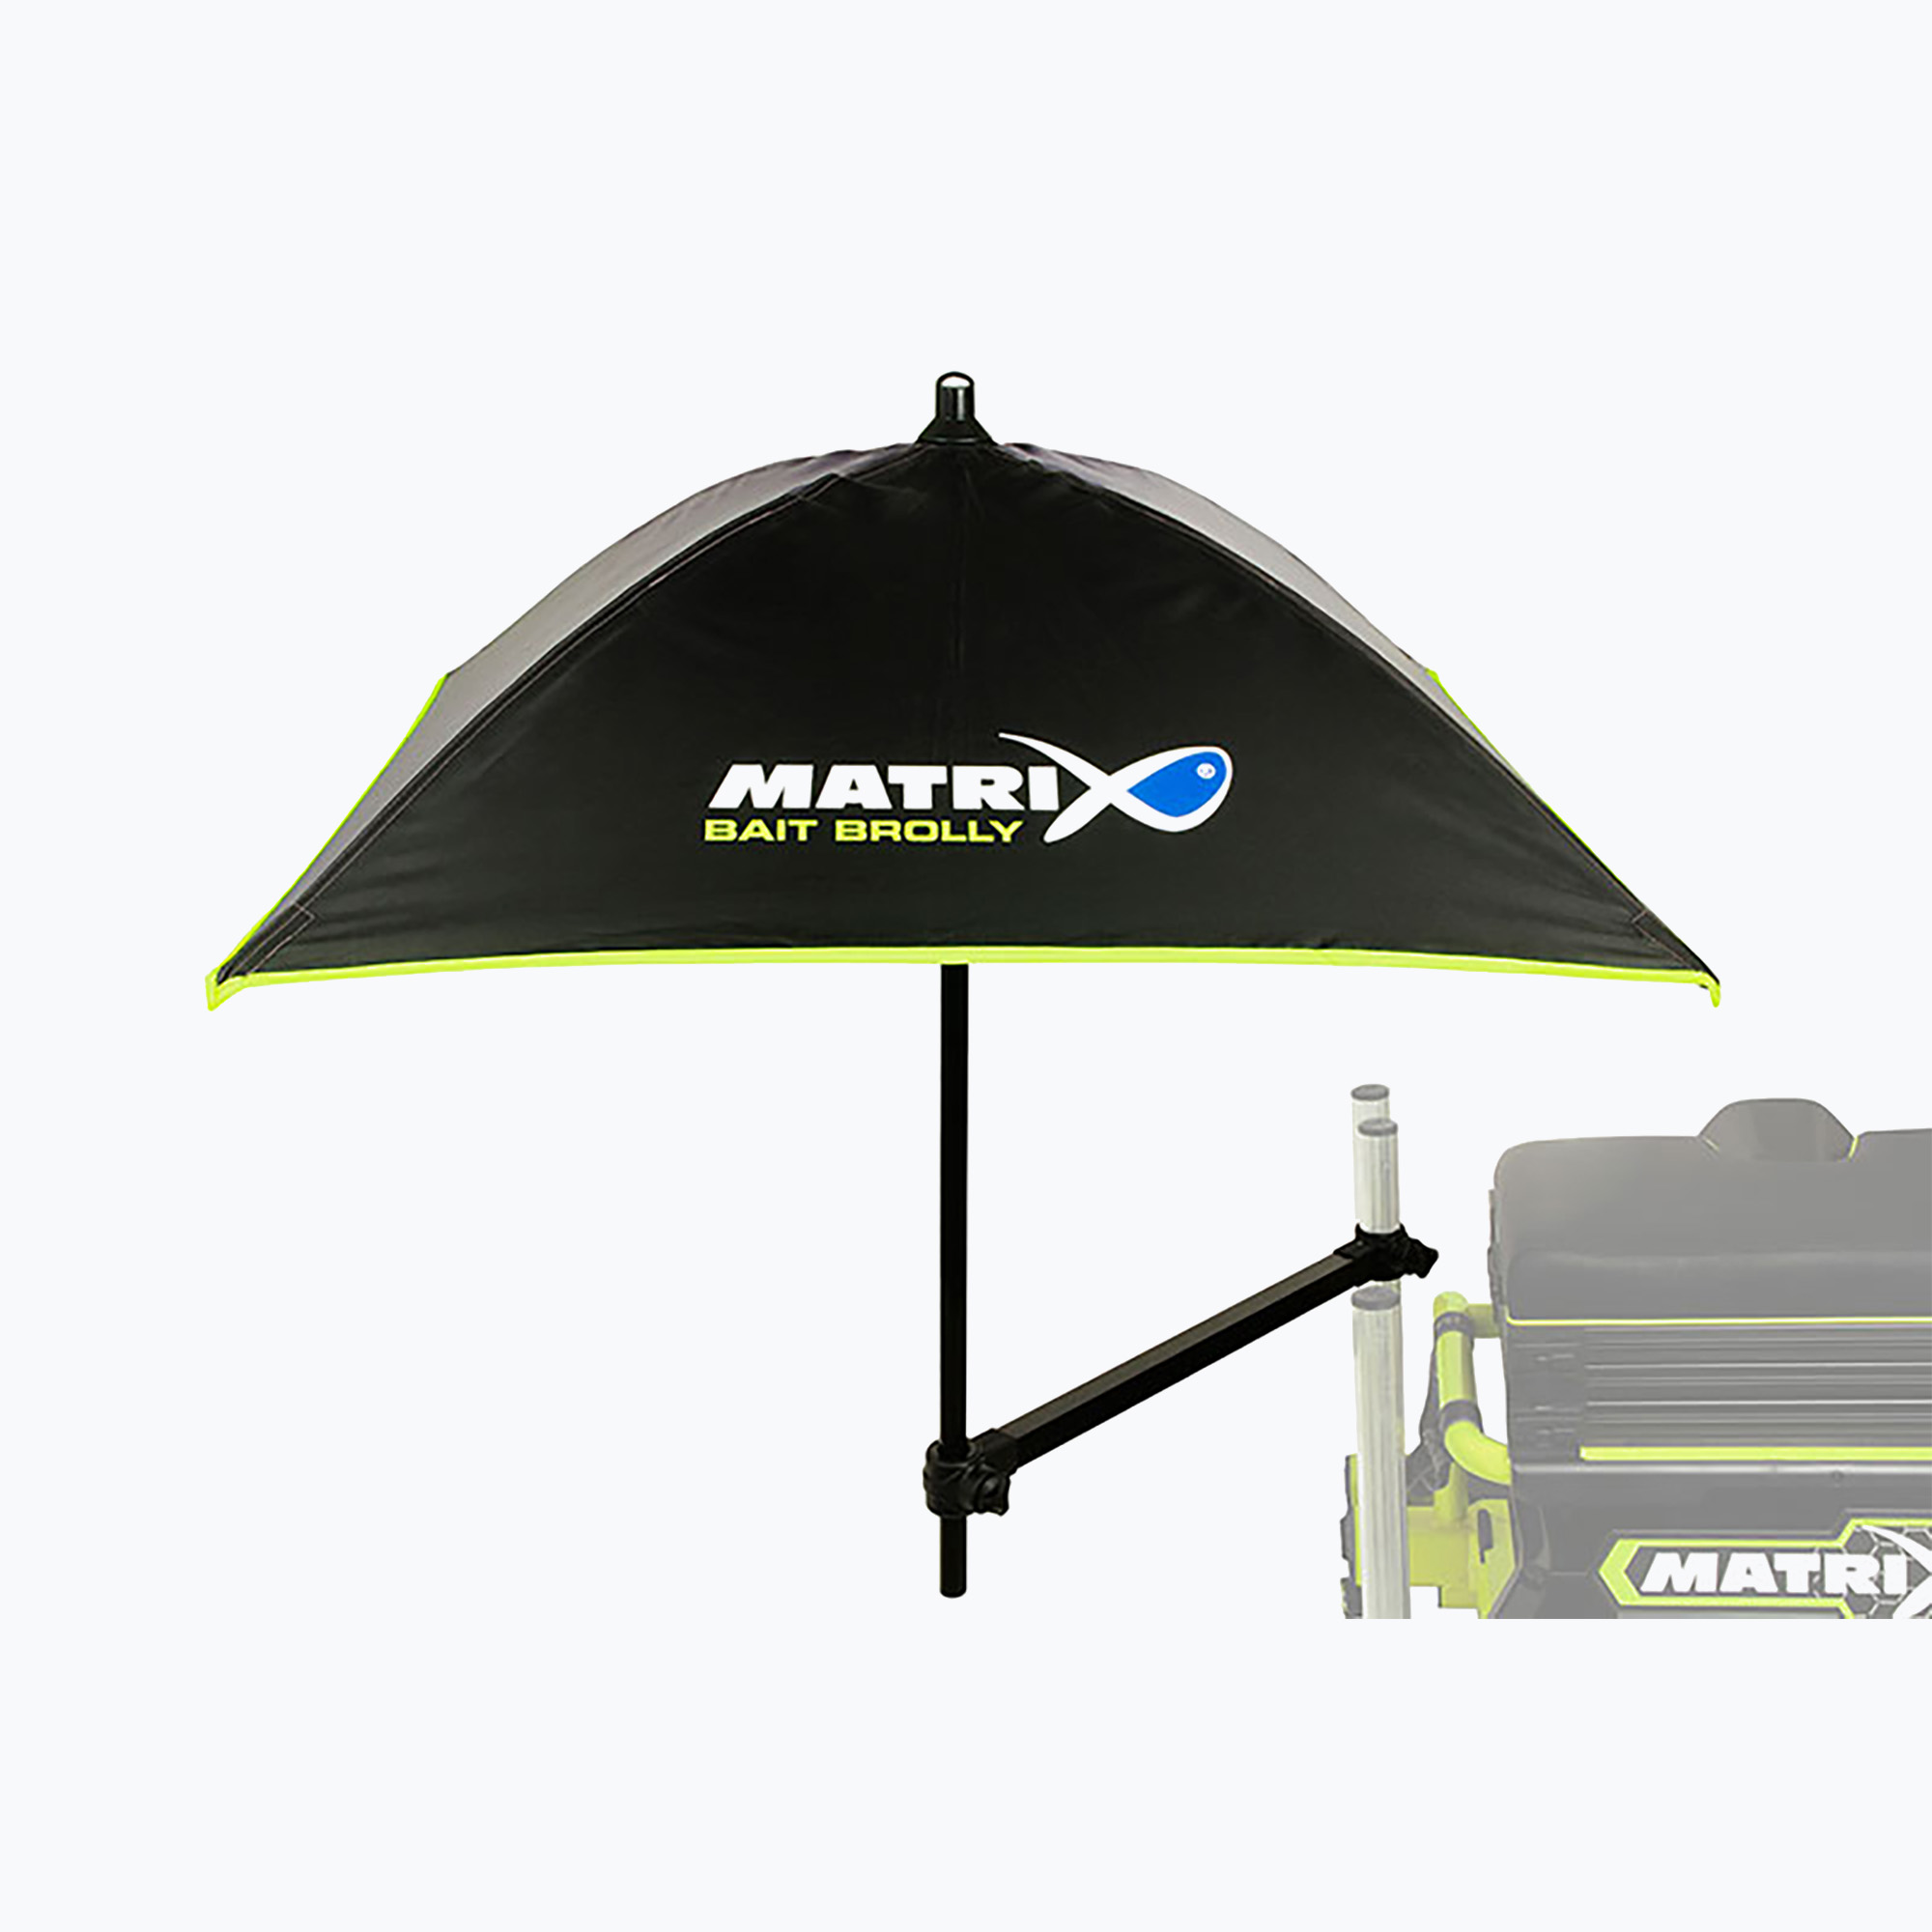 Rybársky dáždnik Matrix Bait Fishing Umbrella Brolley & Support Arm